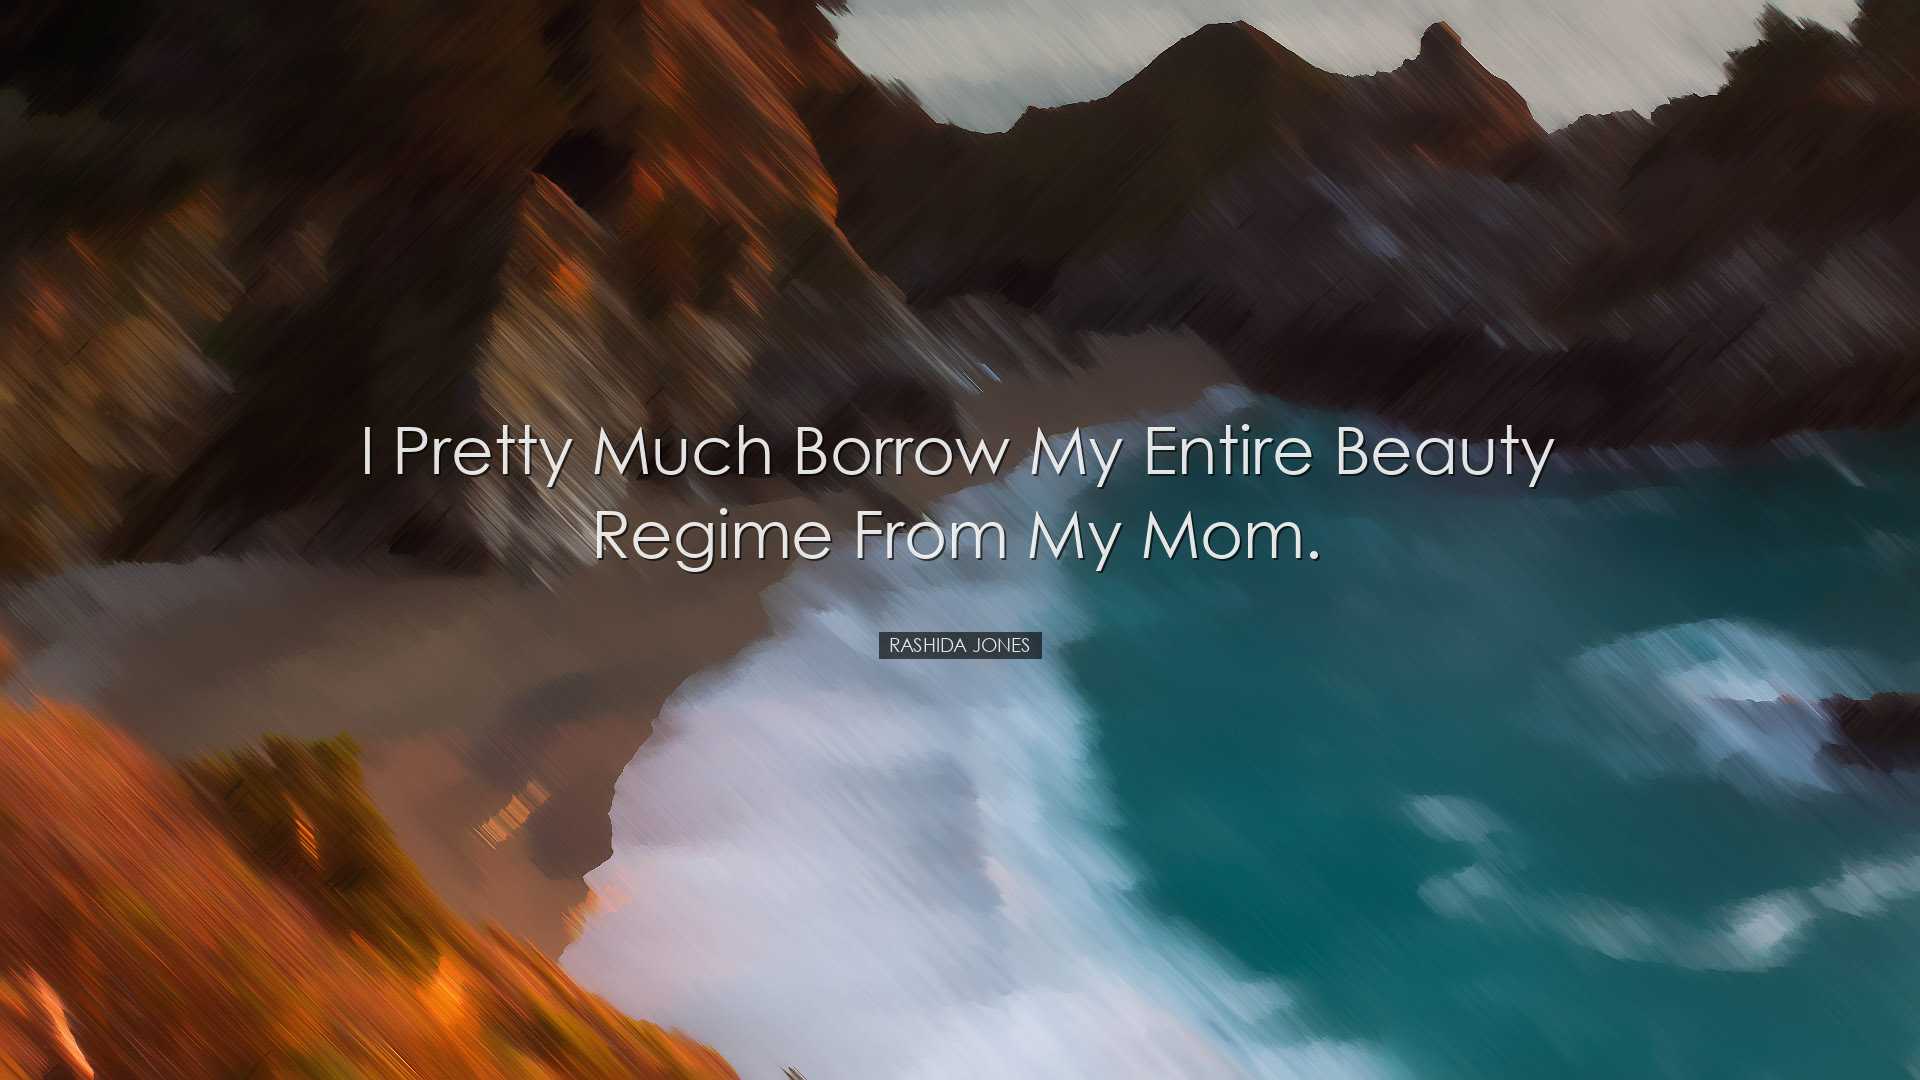 I pretty much borrow my entire beauty regime from my mom. - Rashid